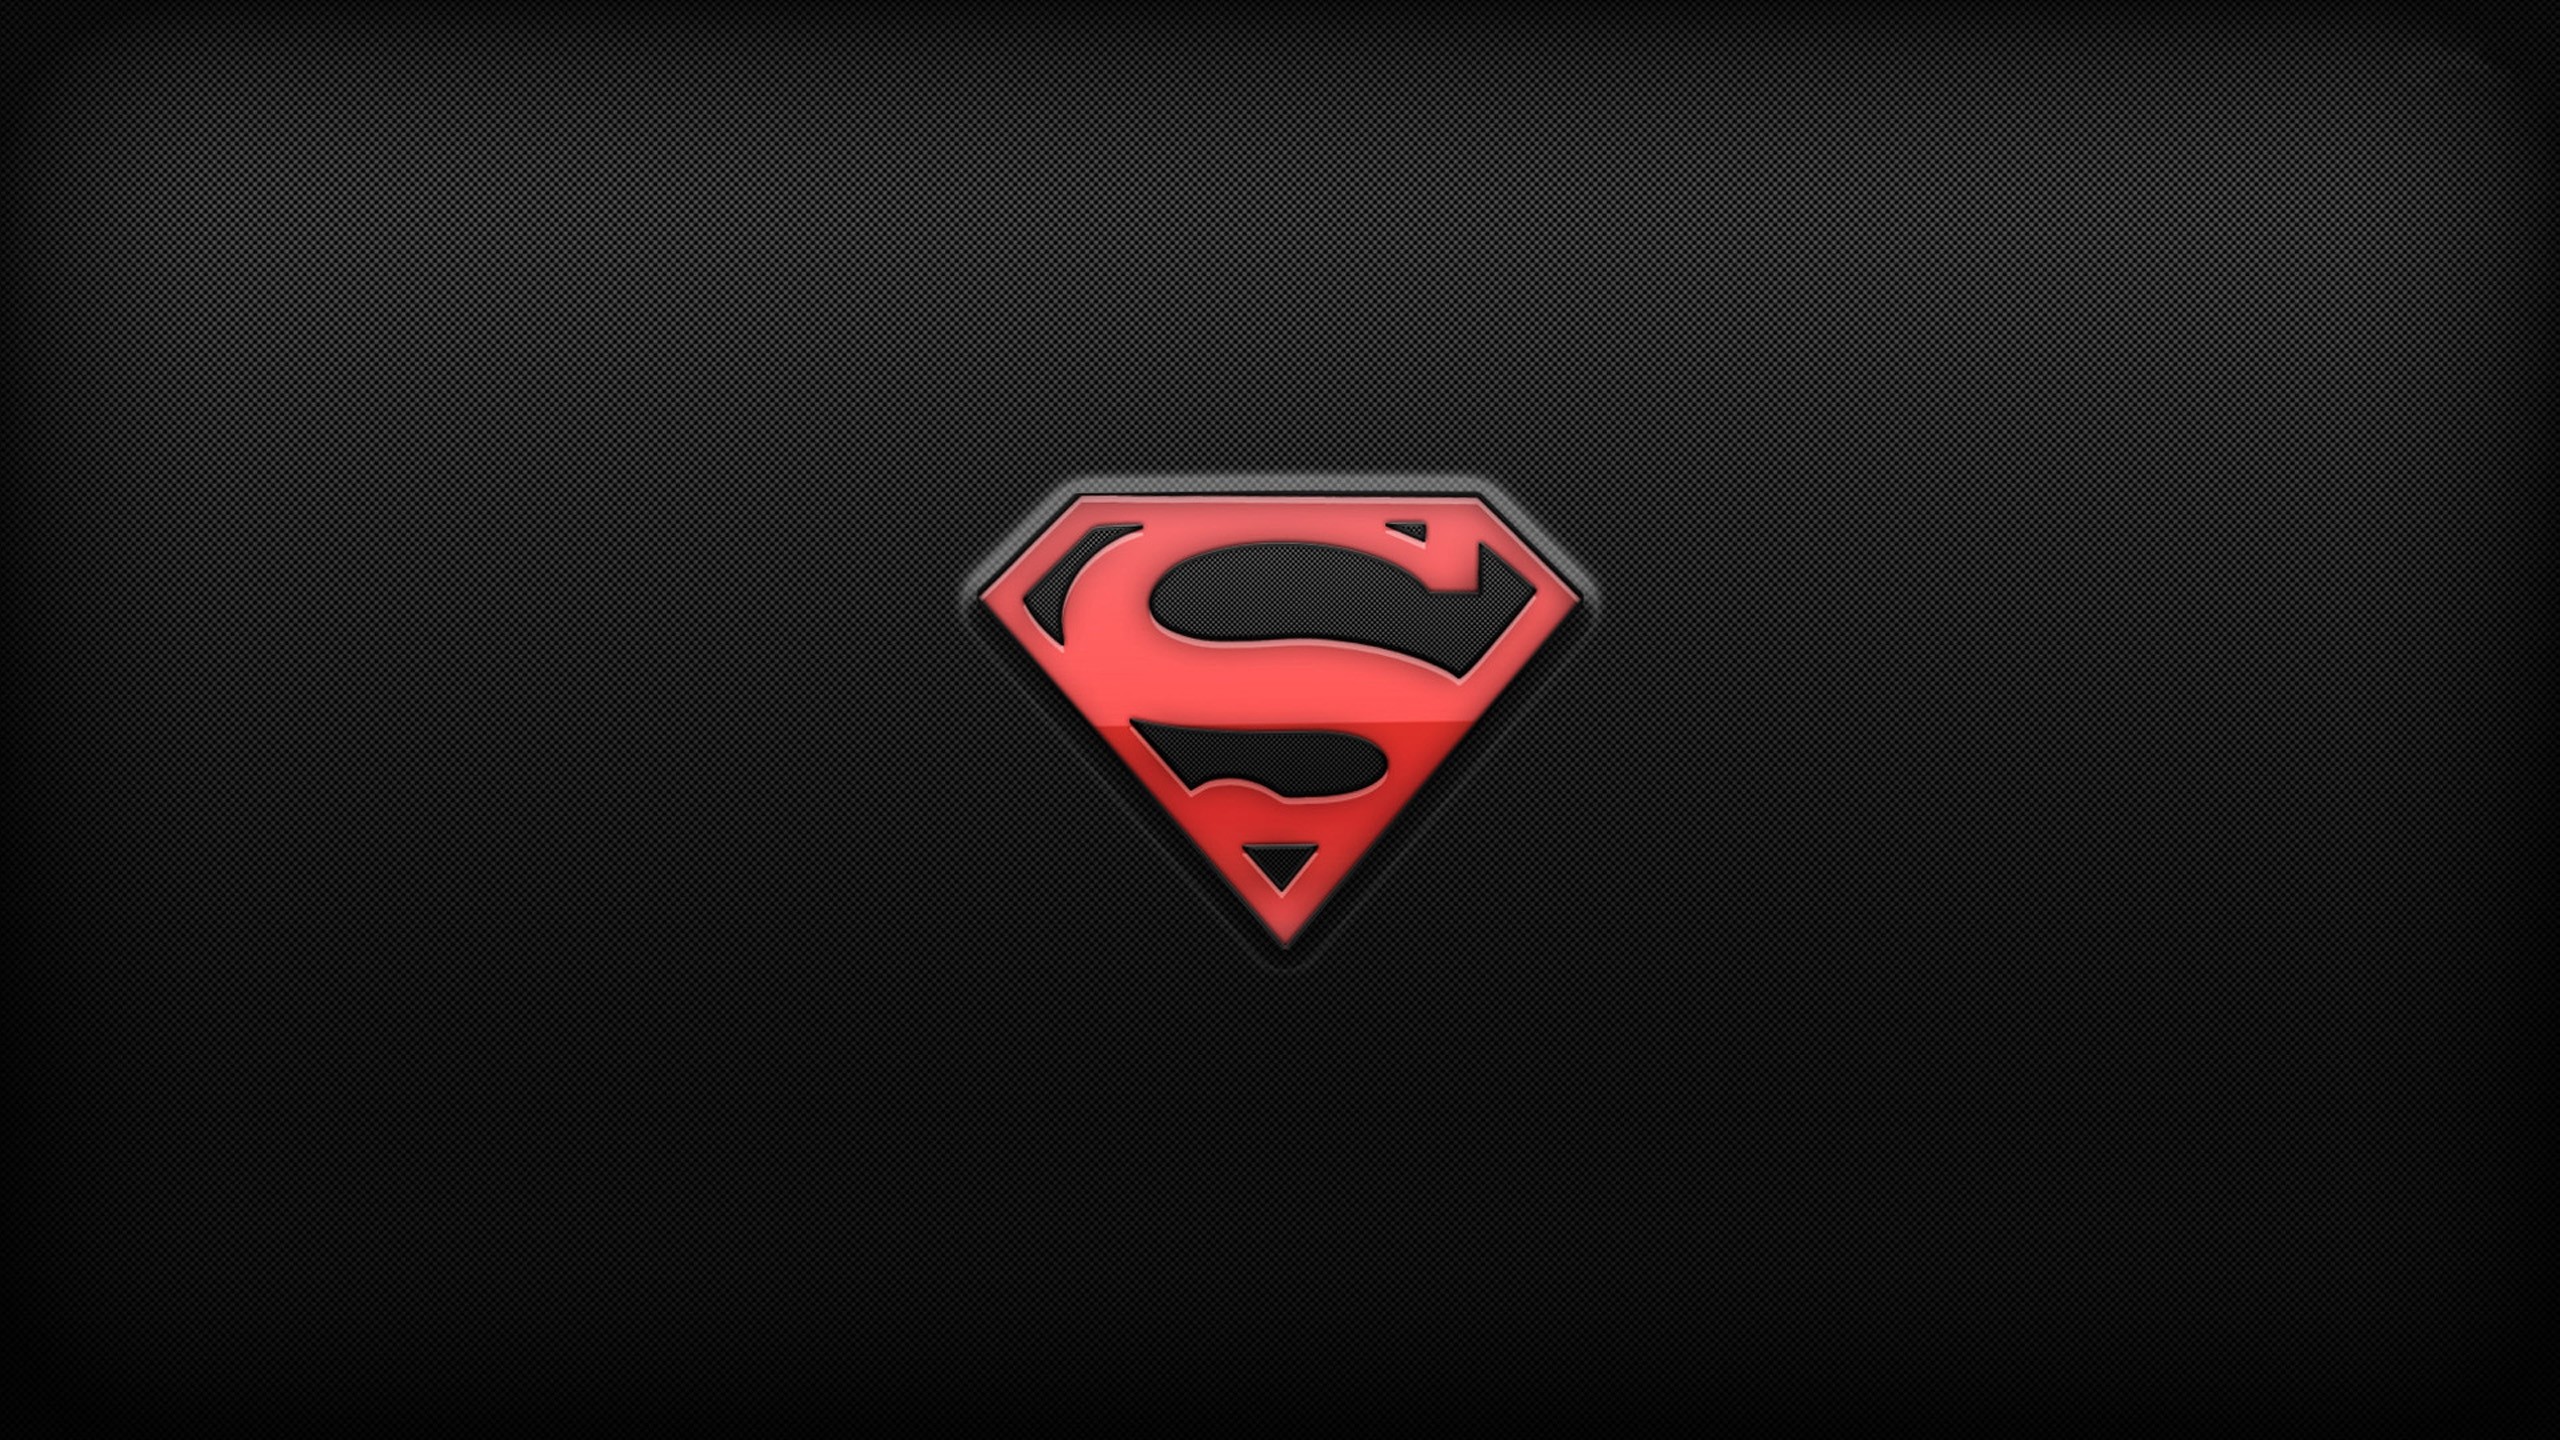 2560x1440 HD Superman Logo Ipad Image.